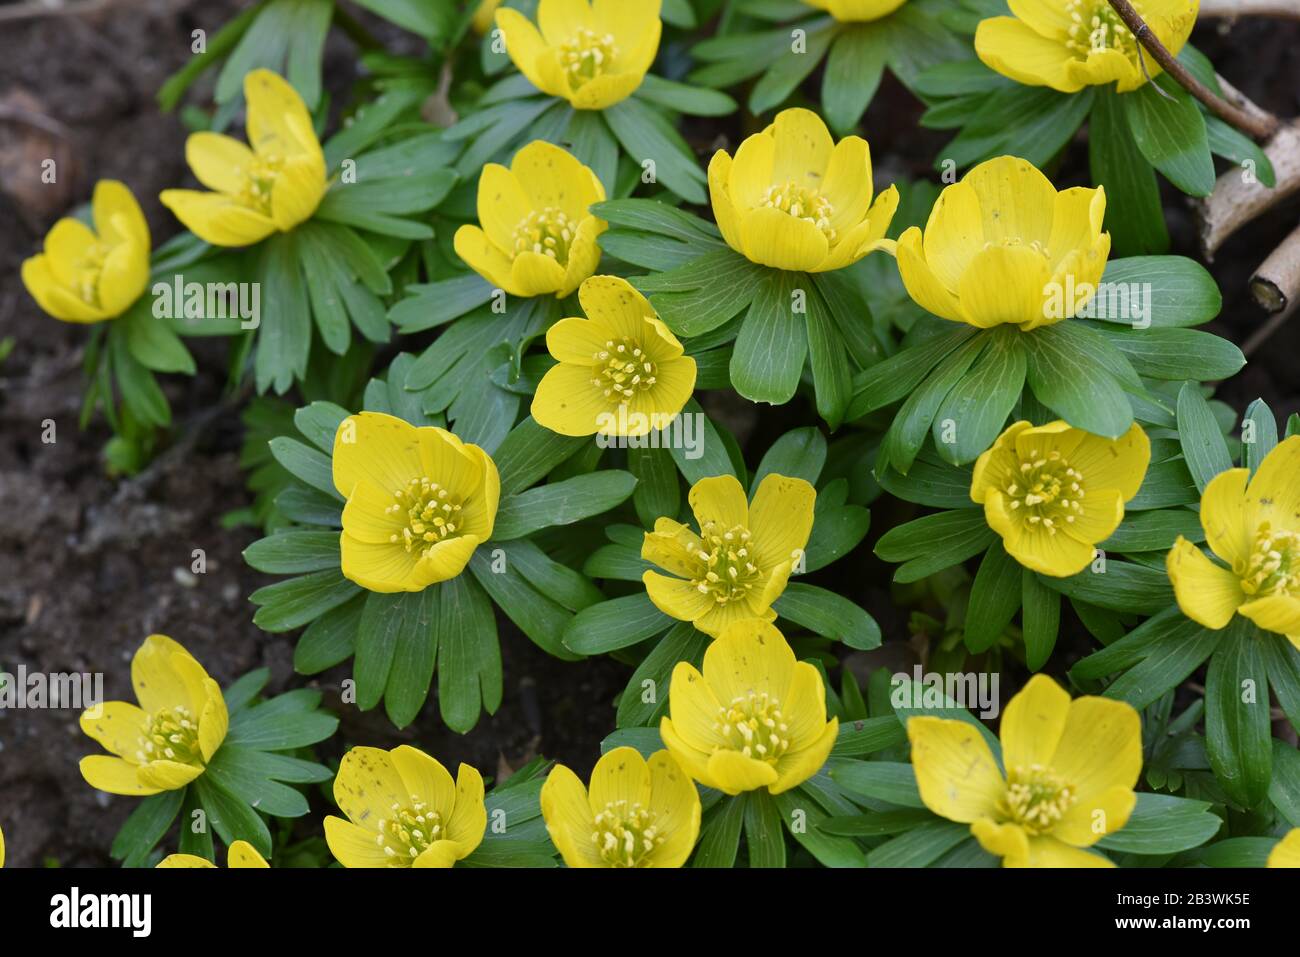 Winterling, Eranthis hyemalis, ist eine Blume die im Winter blueht und gelbe Blueten besitzt. Winterling, Eranthis hyemalis, is a flower that blooms i Stock Photo